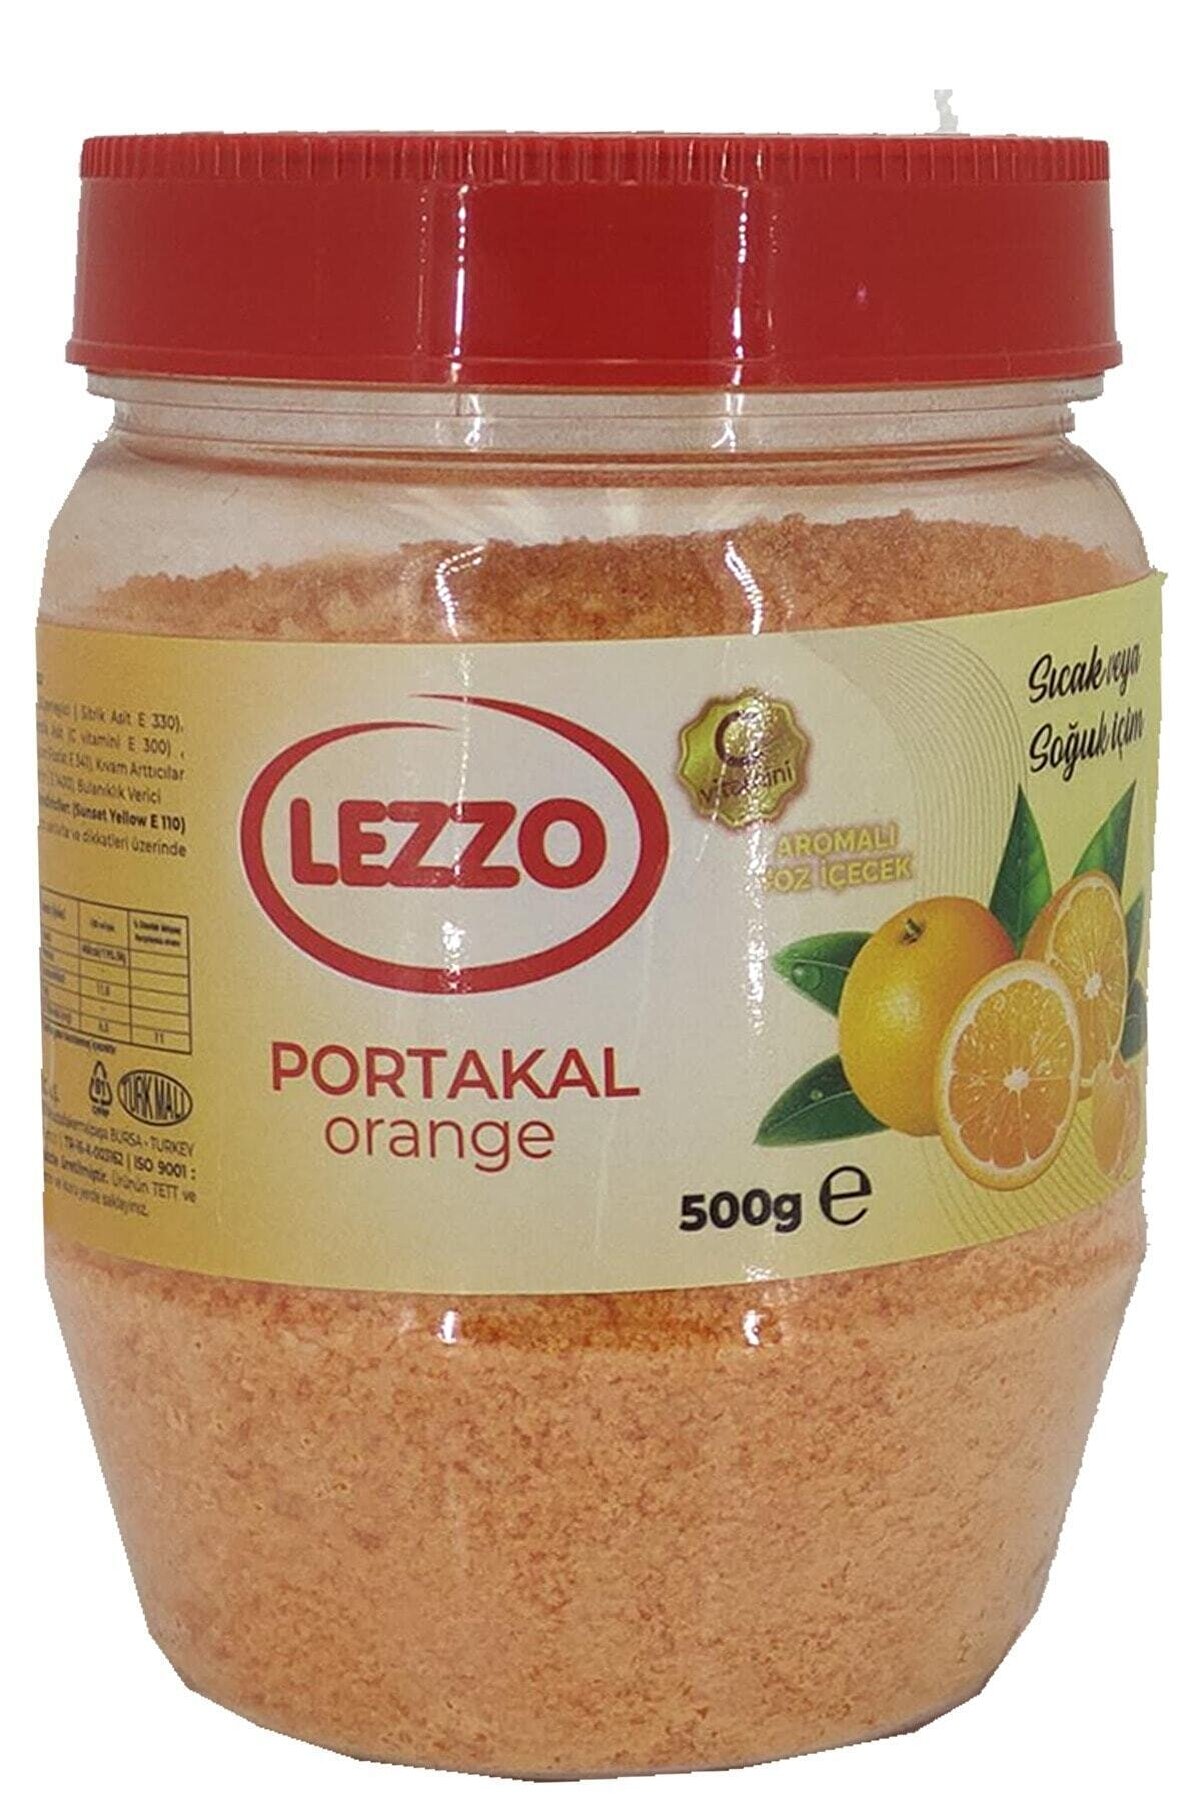 LEZZO Oralet Portakal Aromalı Plastik Şişe 500 gr